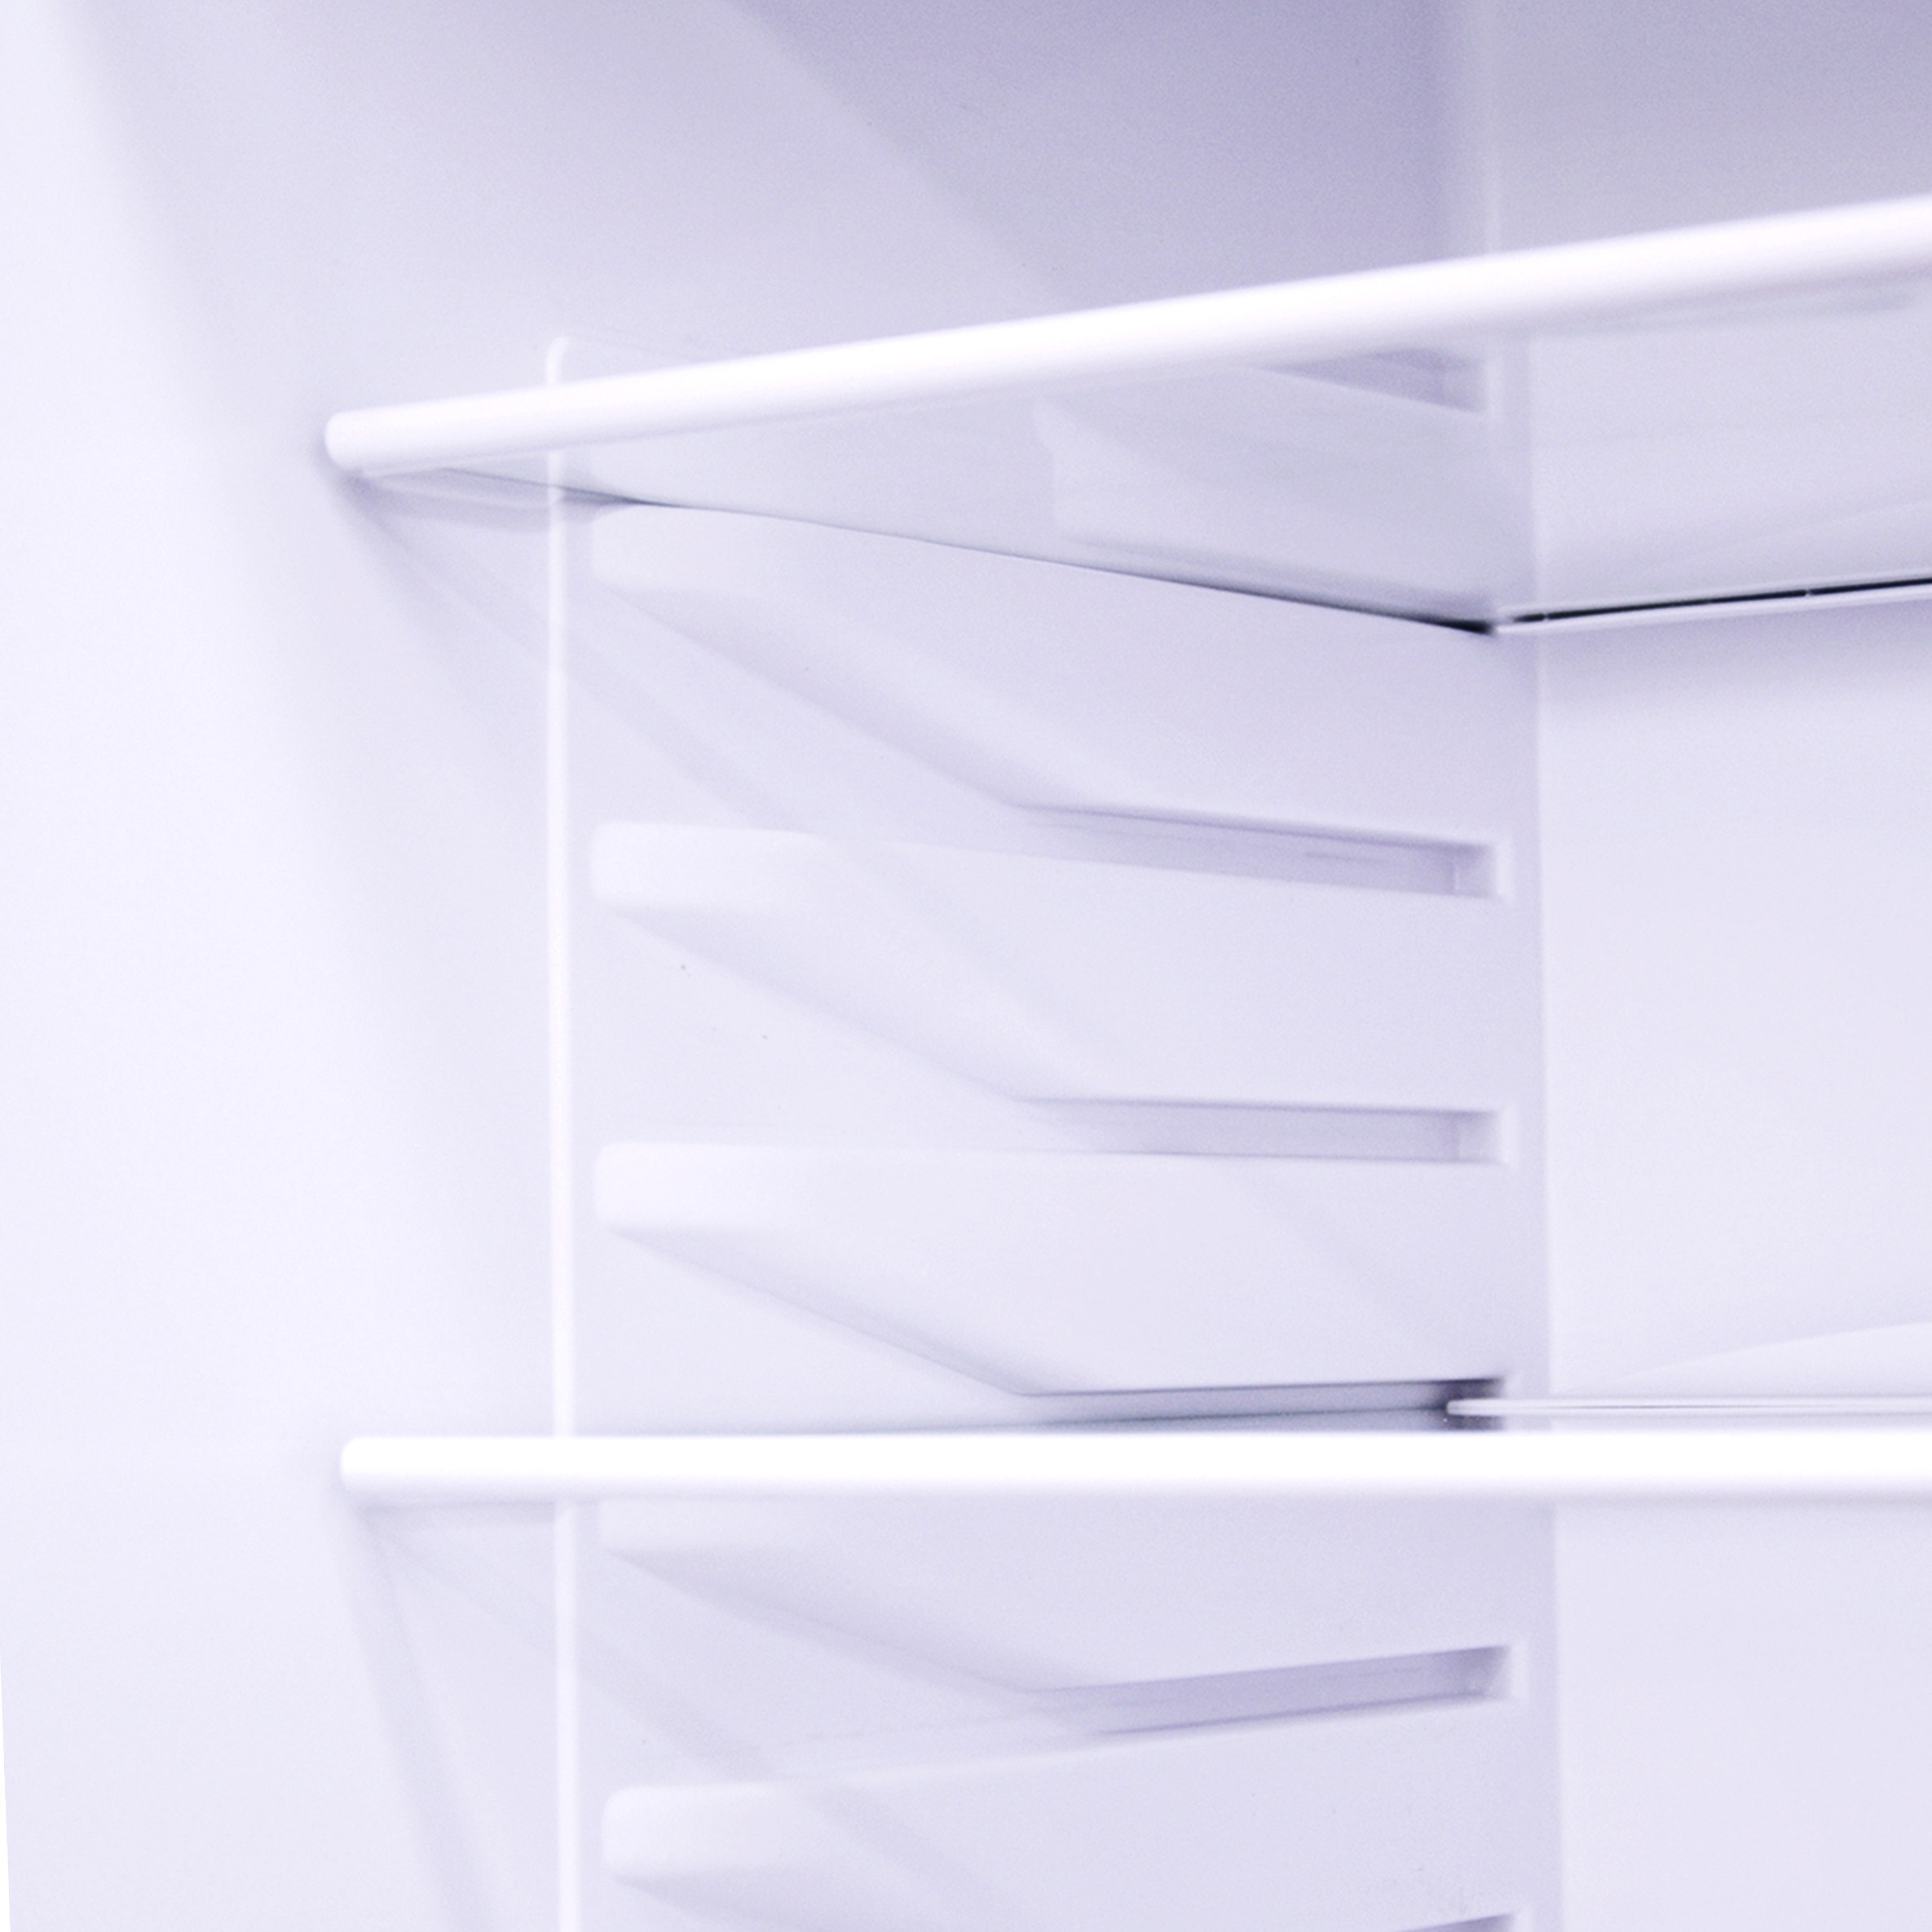 5 полезных лайфхаков по уходу за холодильником